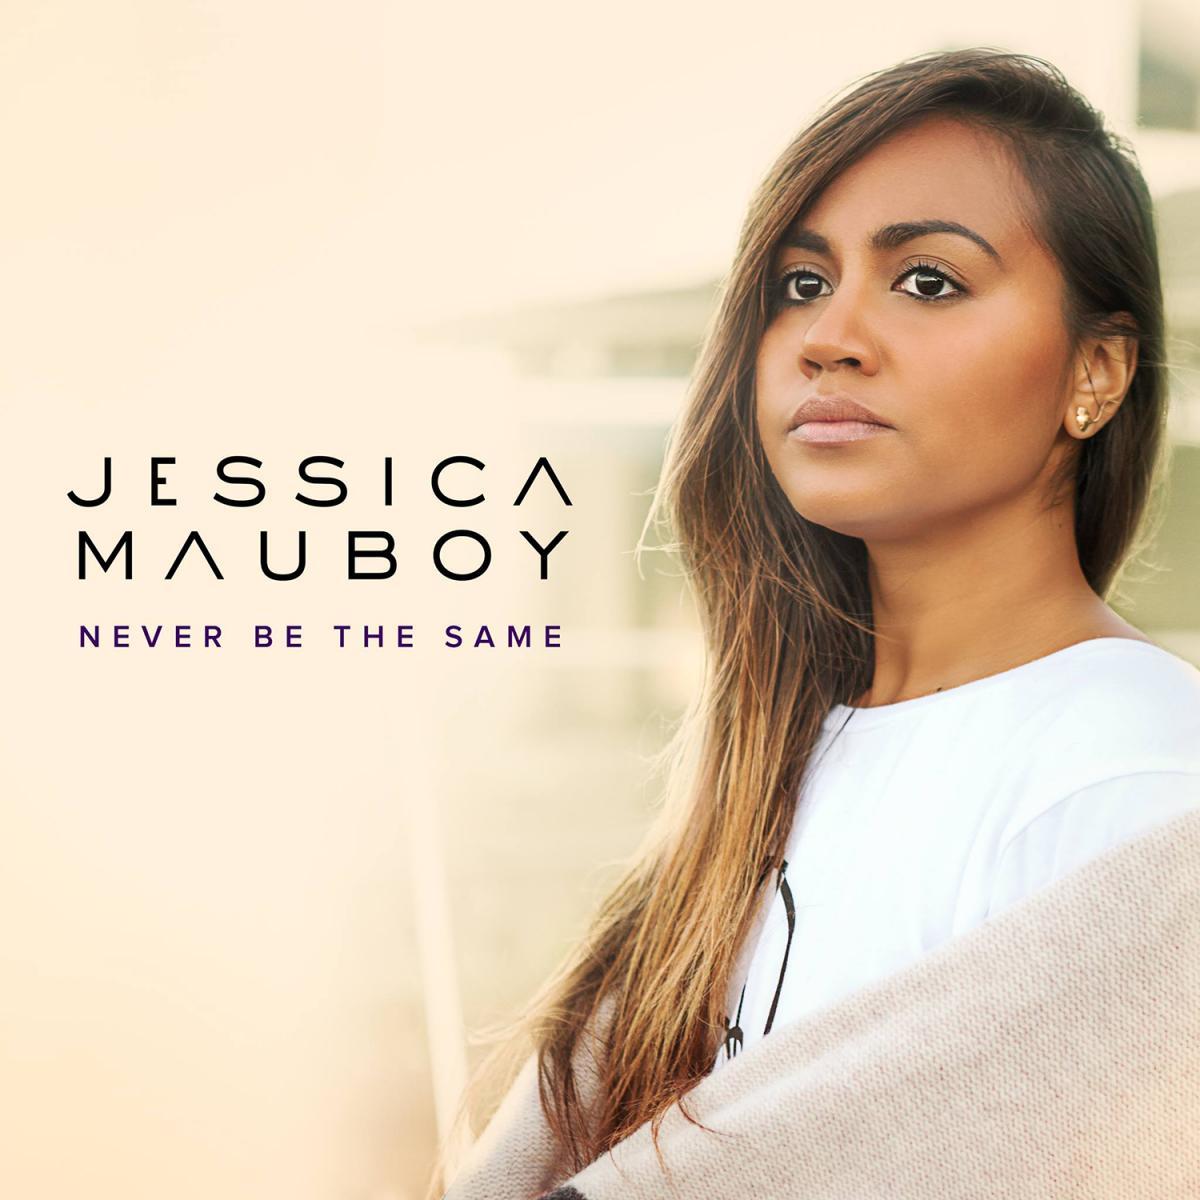 Jessica Mauboy: Never Be the Same (Vídeo musical)